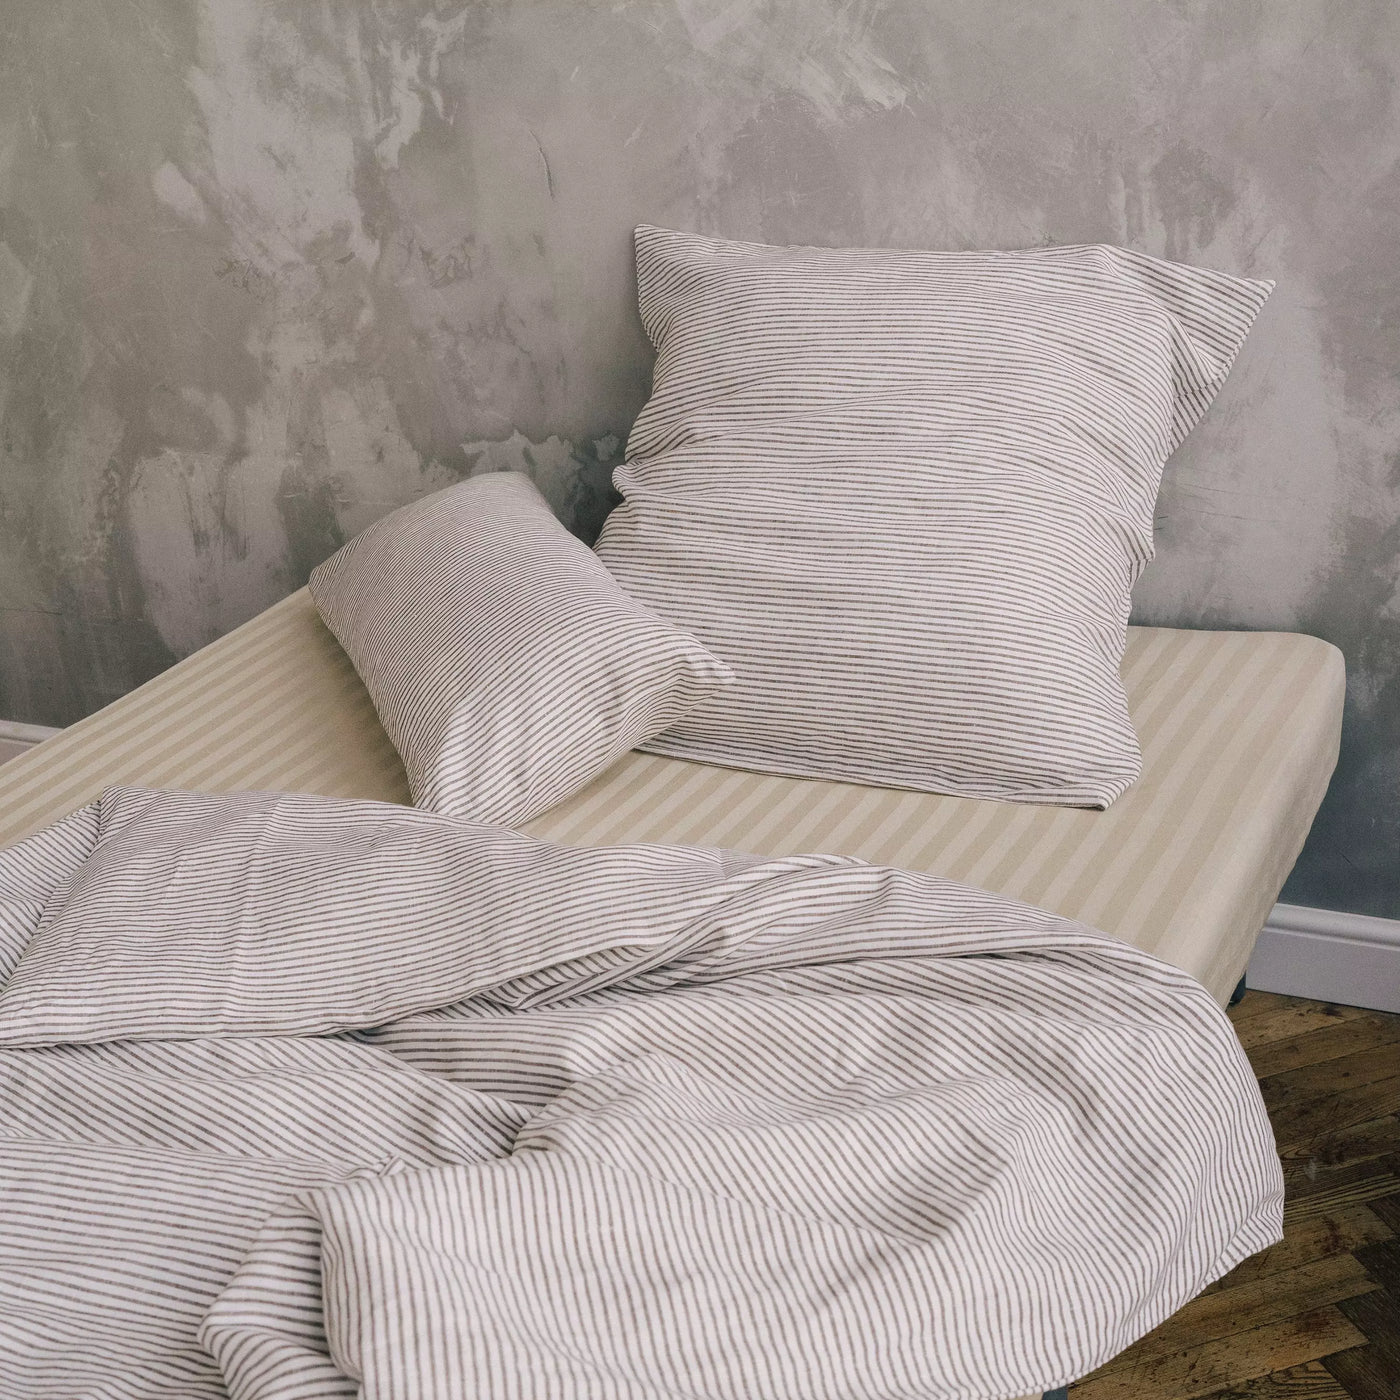 Acquista il set di biancheria da letto in puro lino 135x200 in bianco con strisce marroni 4